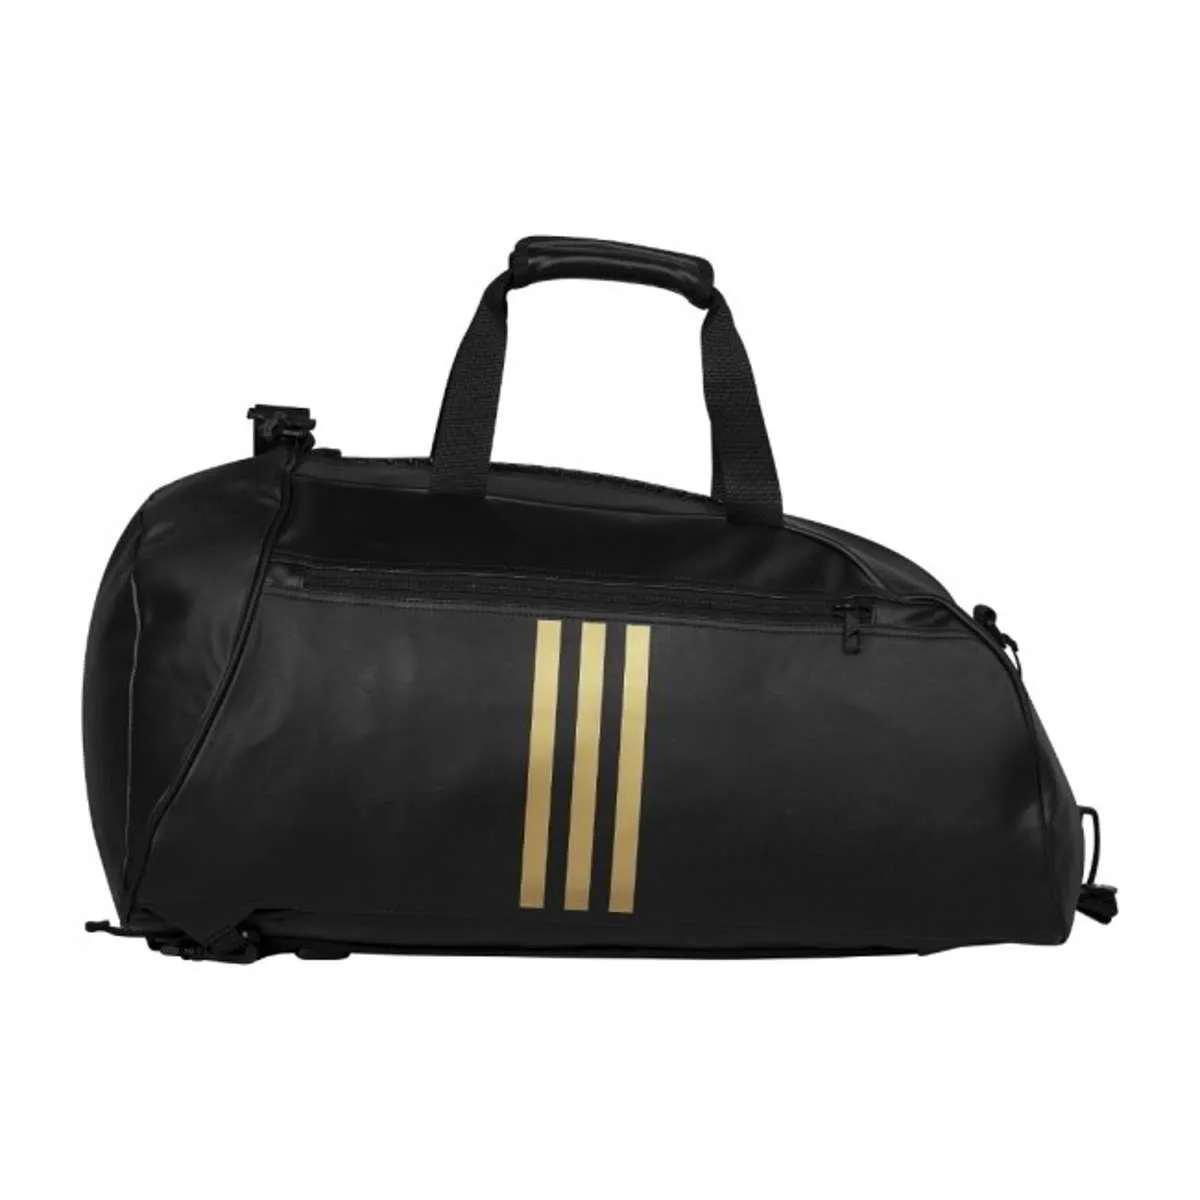 adidas bolsa de deporte - mochila deportiva imitación cuero negro/oro